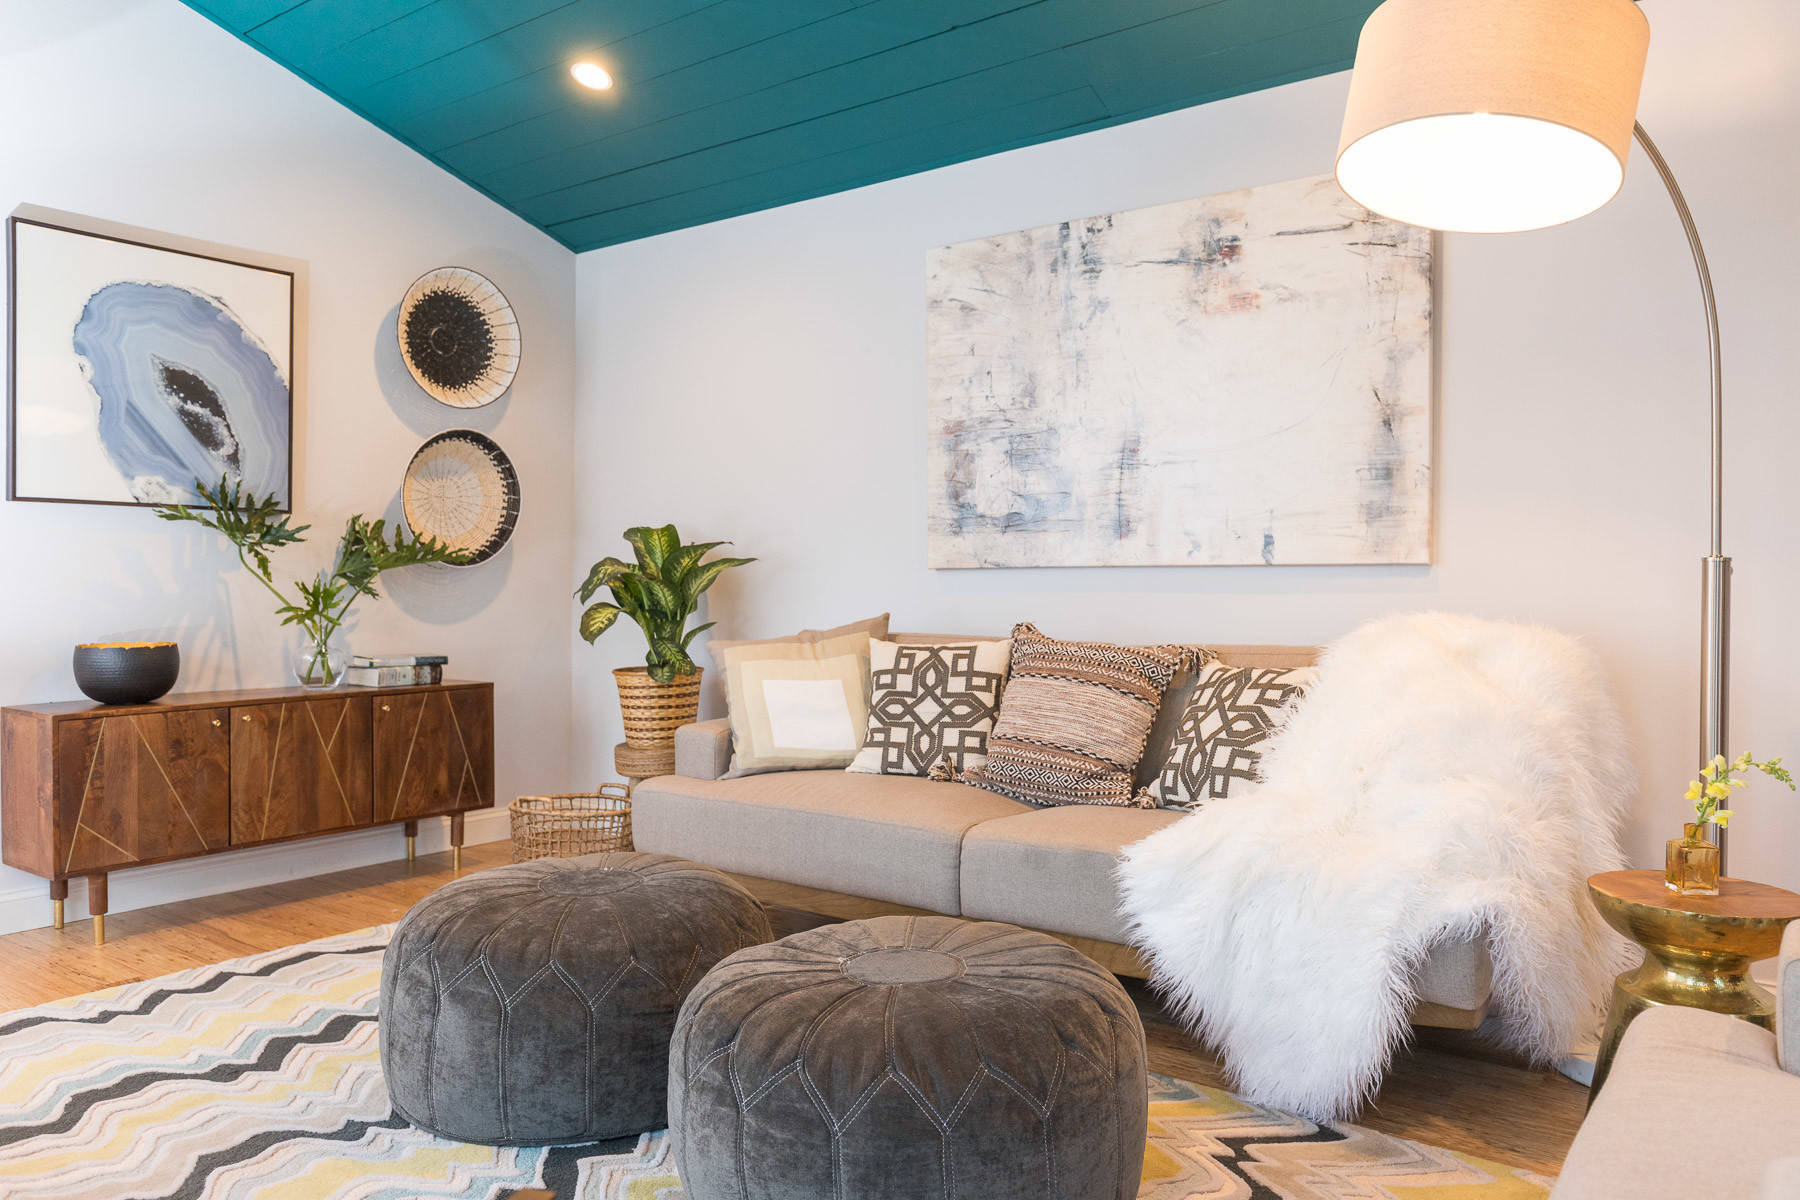 Phòng khách được thiết kế theo phong cách Scandinavian với lối trang trí trung tính cùng các yếu tố tự nhiên. Chính vì thế, sự xuất hiện của trần nhà màu xanh đậm khiến căn phòng trở nên nổi bật vô cùng.